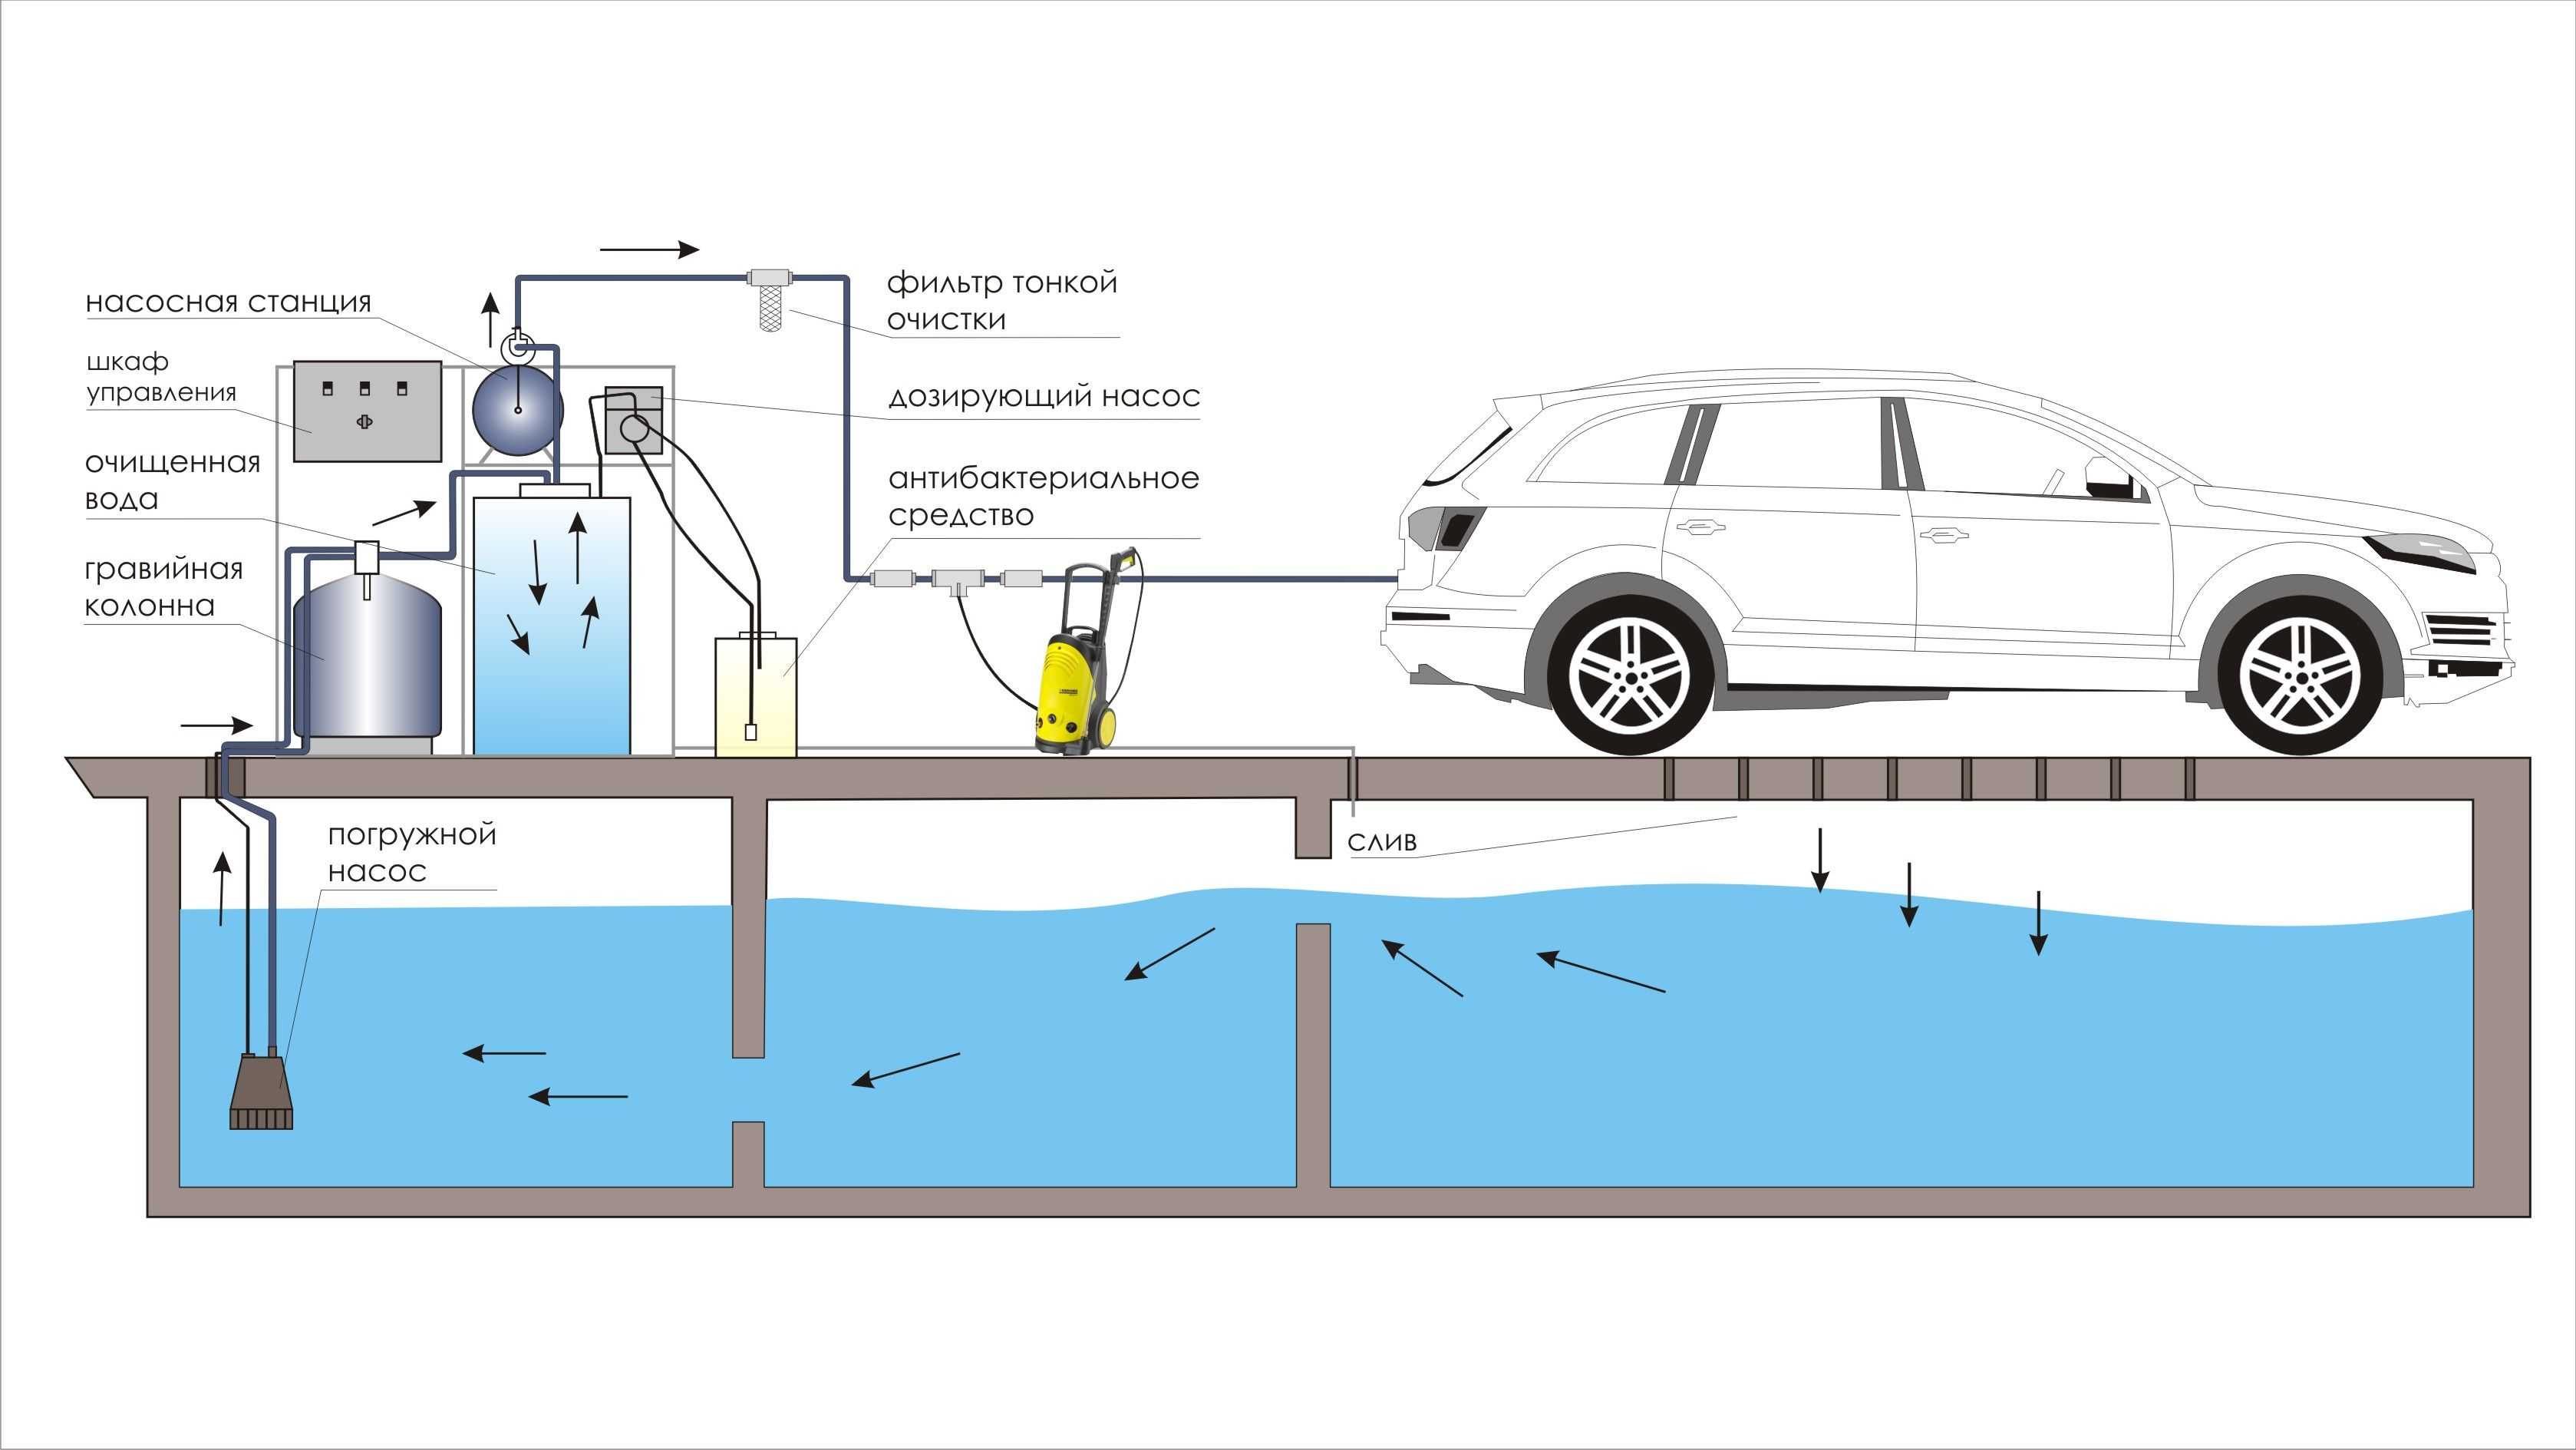 На демонстрационном видео система очистки воды для автомойки работает эффектно и, на первый взгляд, просто, но установка оборудования требует грамотного подхода